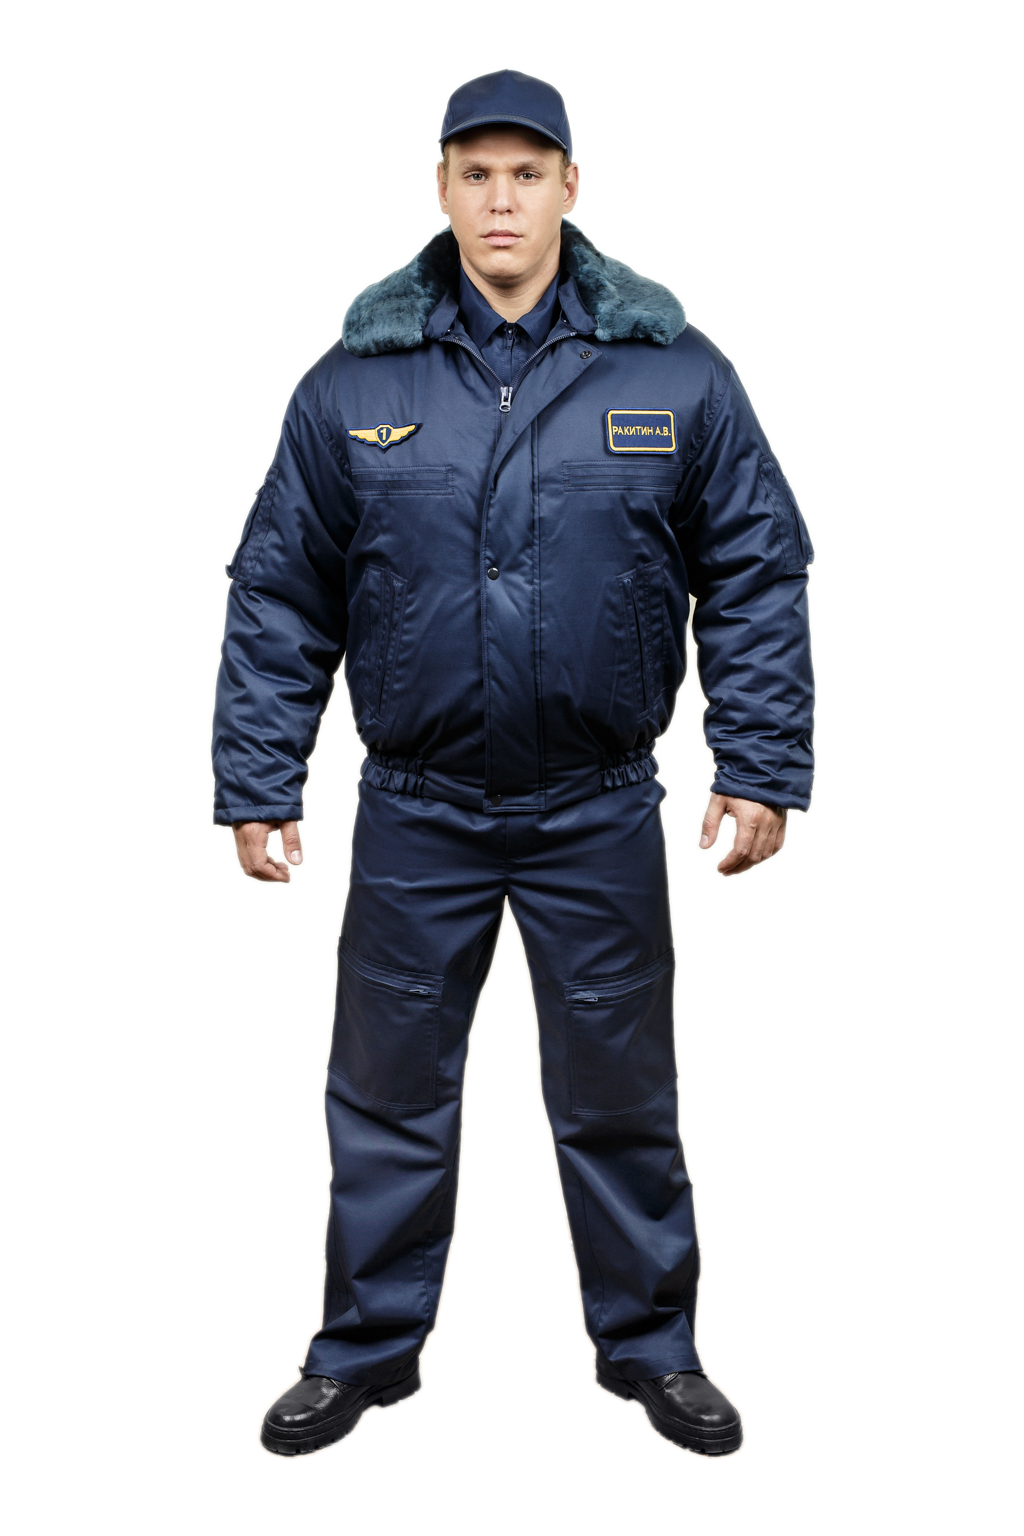 Купить техническую форму. Зимняя куртка пилота ВКС. ВКС техничка синяя форма. Куртка ЛТО ВКС синяя. Летный костюм зимний Техноавиа.